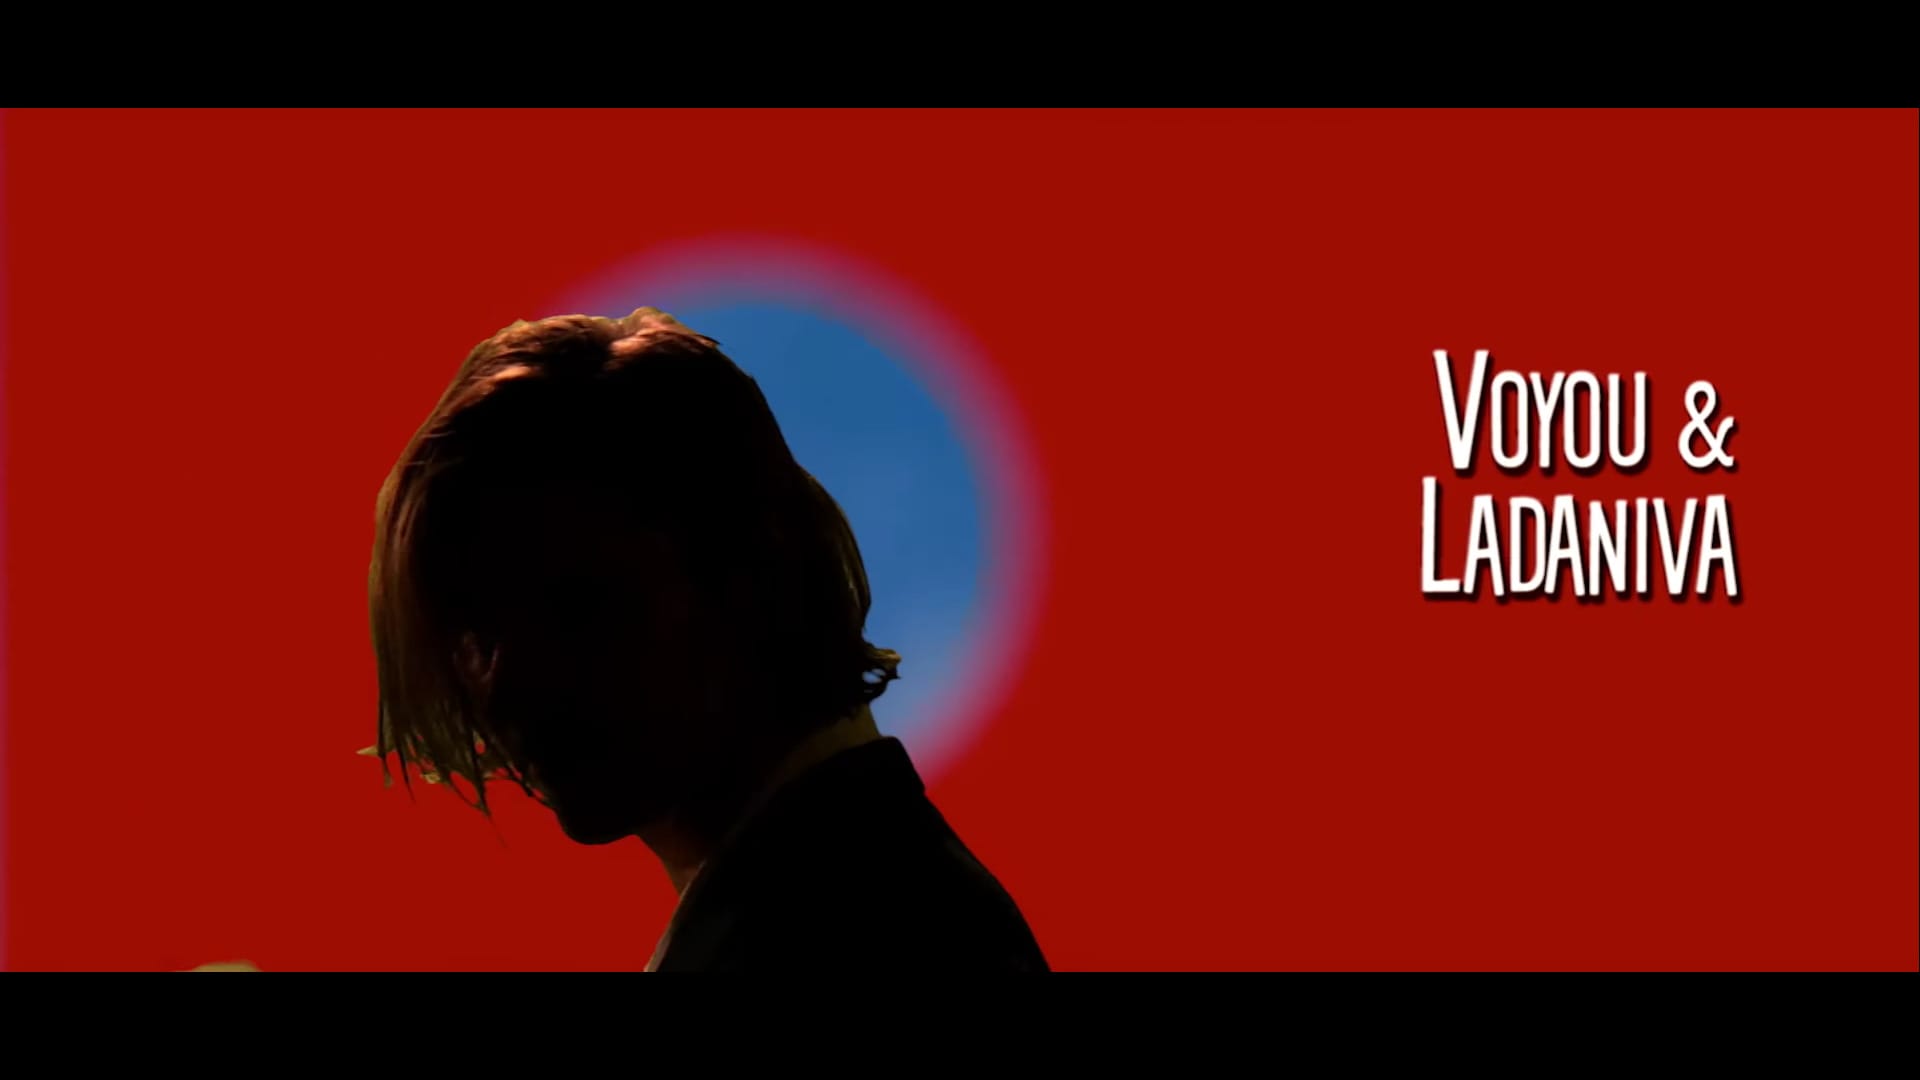 La silhouette de Voyou se détache du fond rouge sur lequel est inscrit "Voyou & Ladaniva"